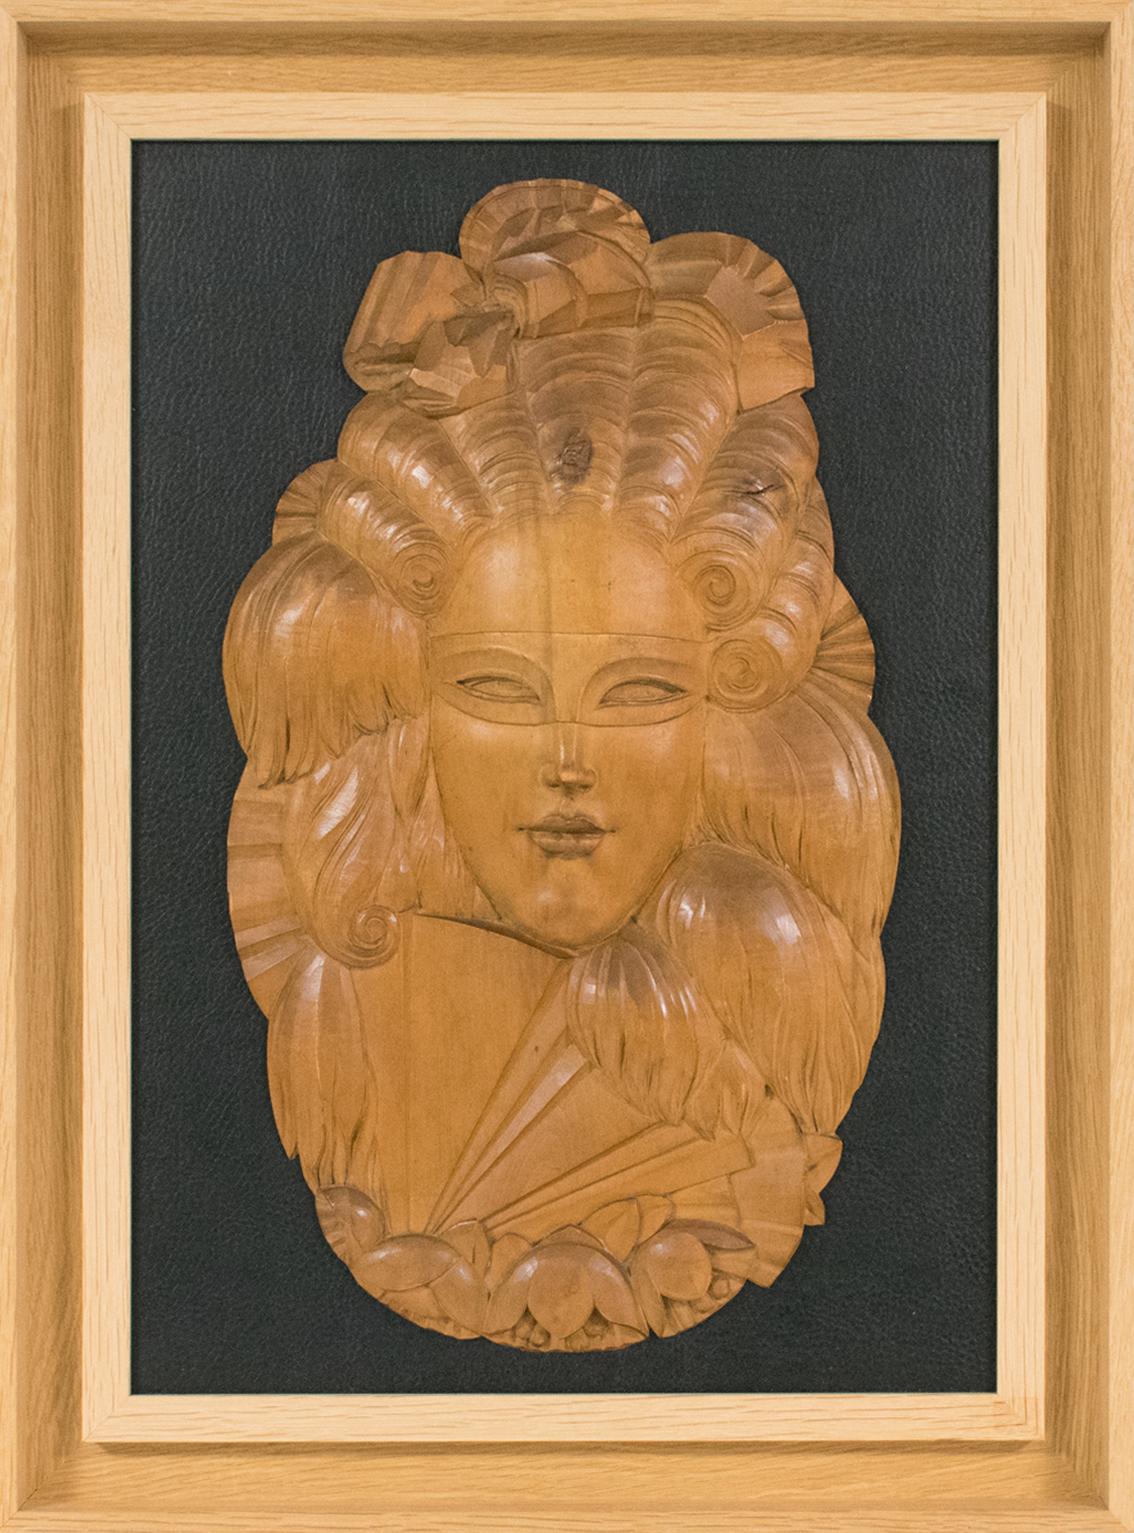 Wandskulptur einer venezianischen Maske aus handgeschnitztem Holz im Art déco-Stil – Mixed Media Art von Unknown